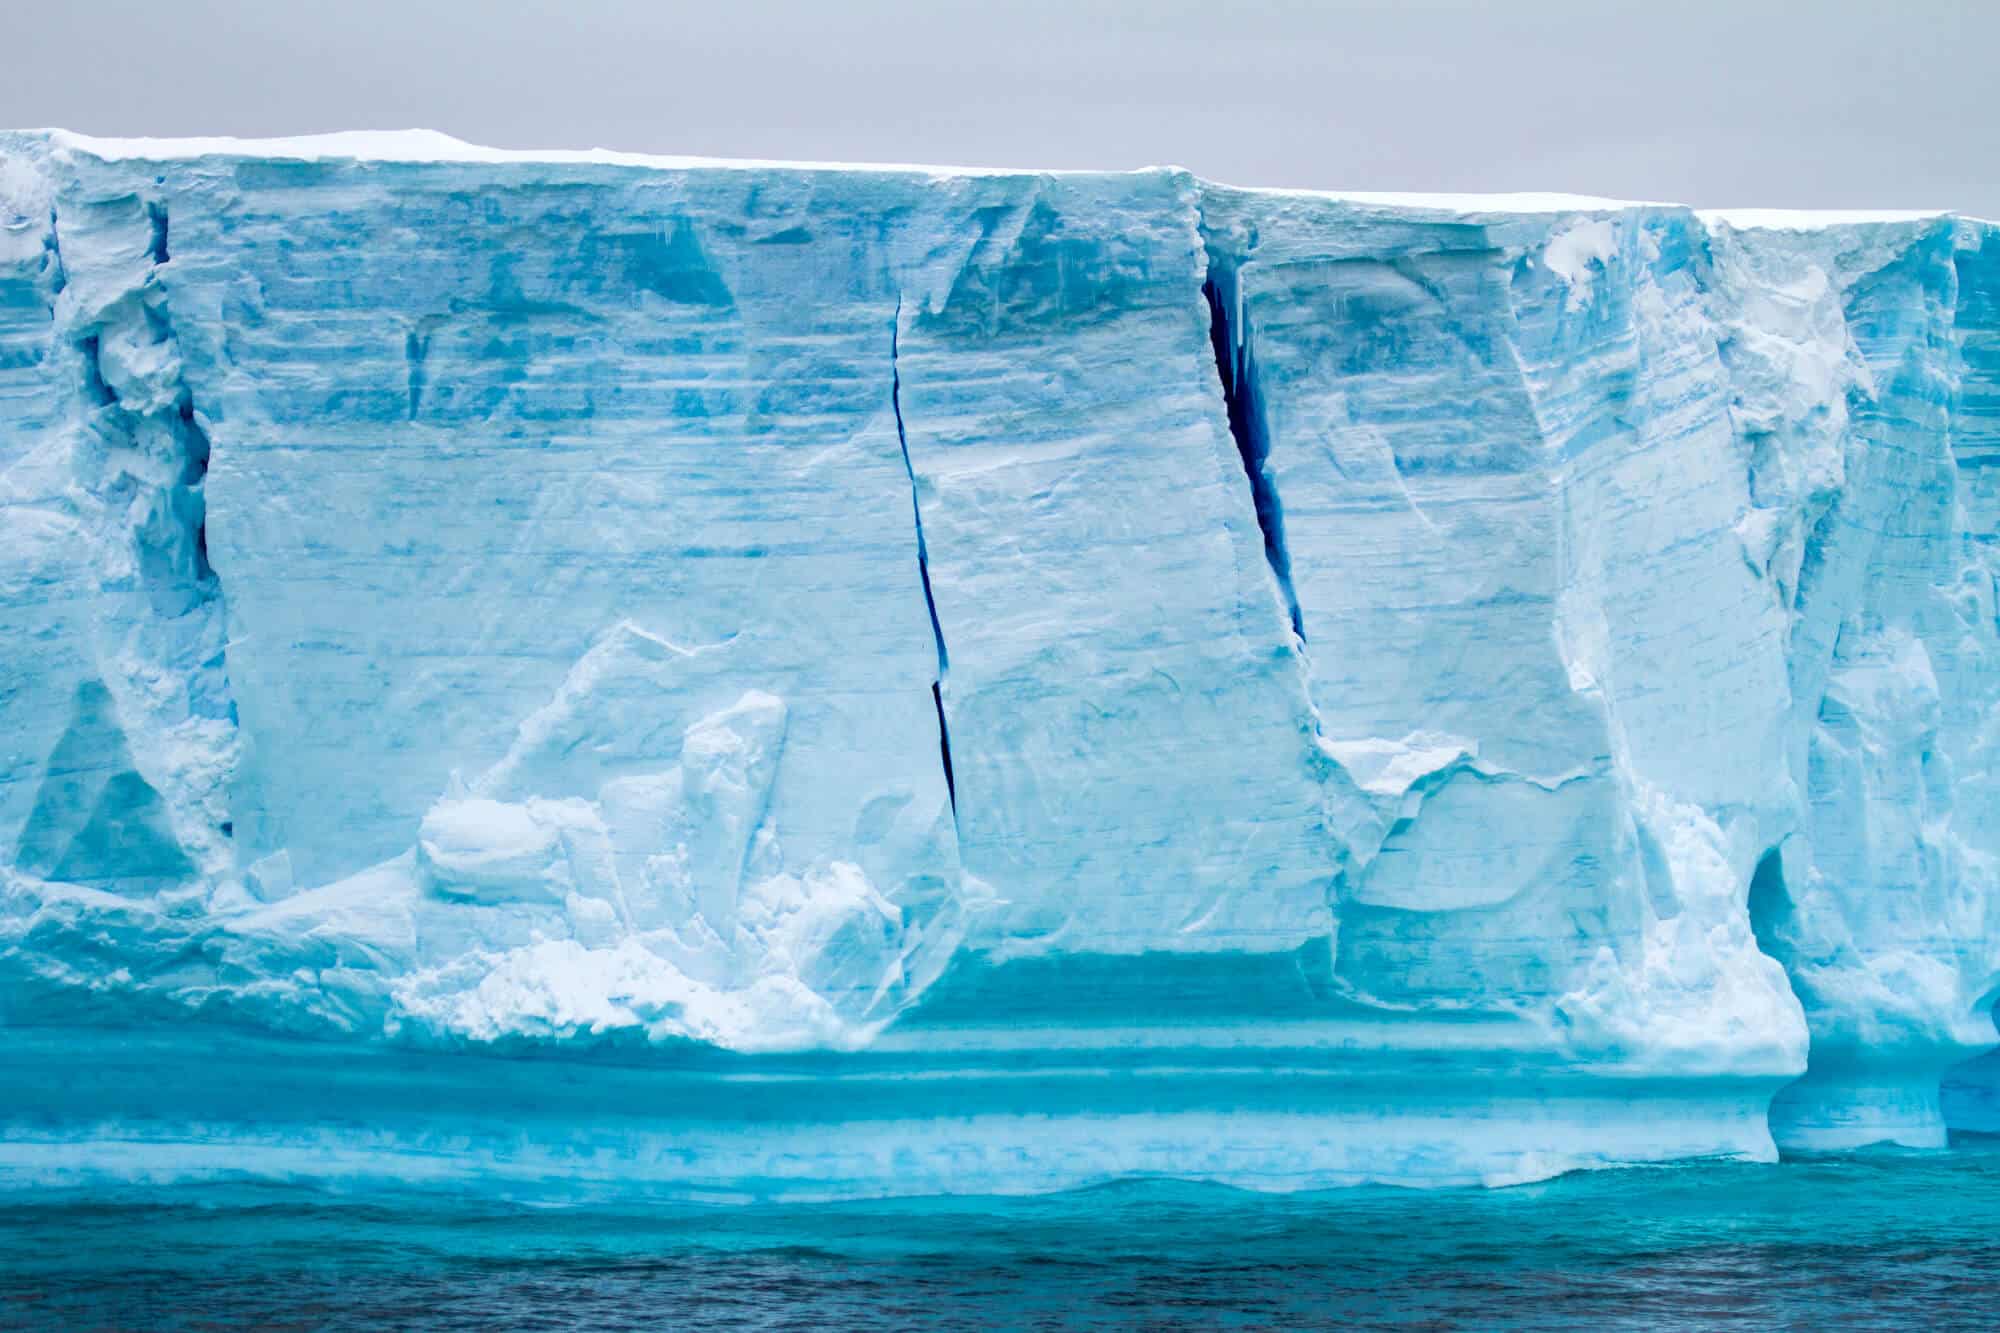 קרחון בחצי האי האטארקטי, איזור איי פלמר. <a href="https://depositphotos.com. ">המחשה: depositphotos.com</a>